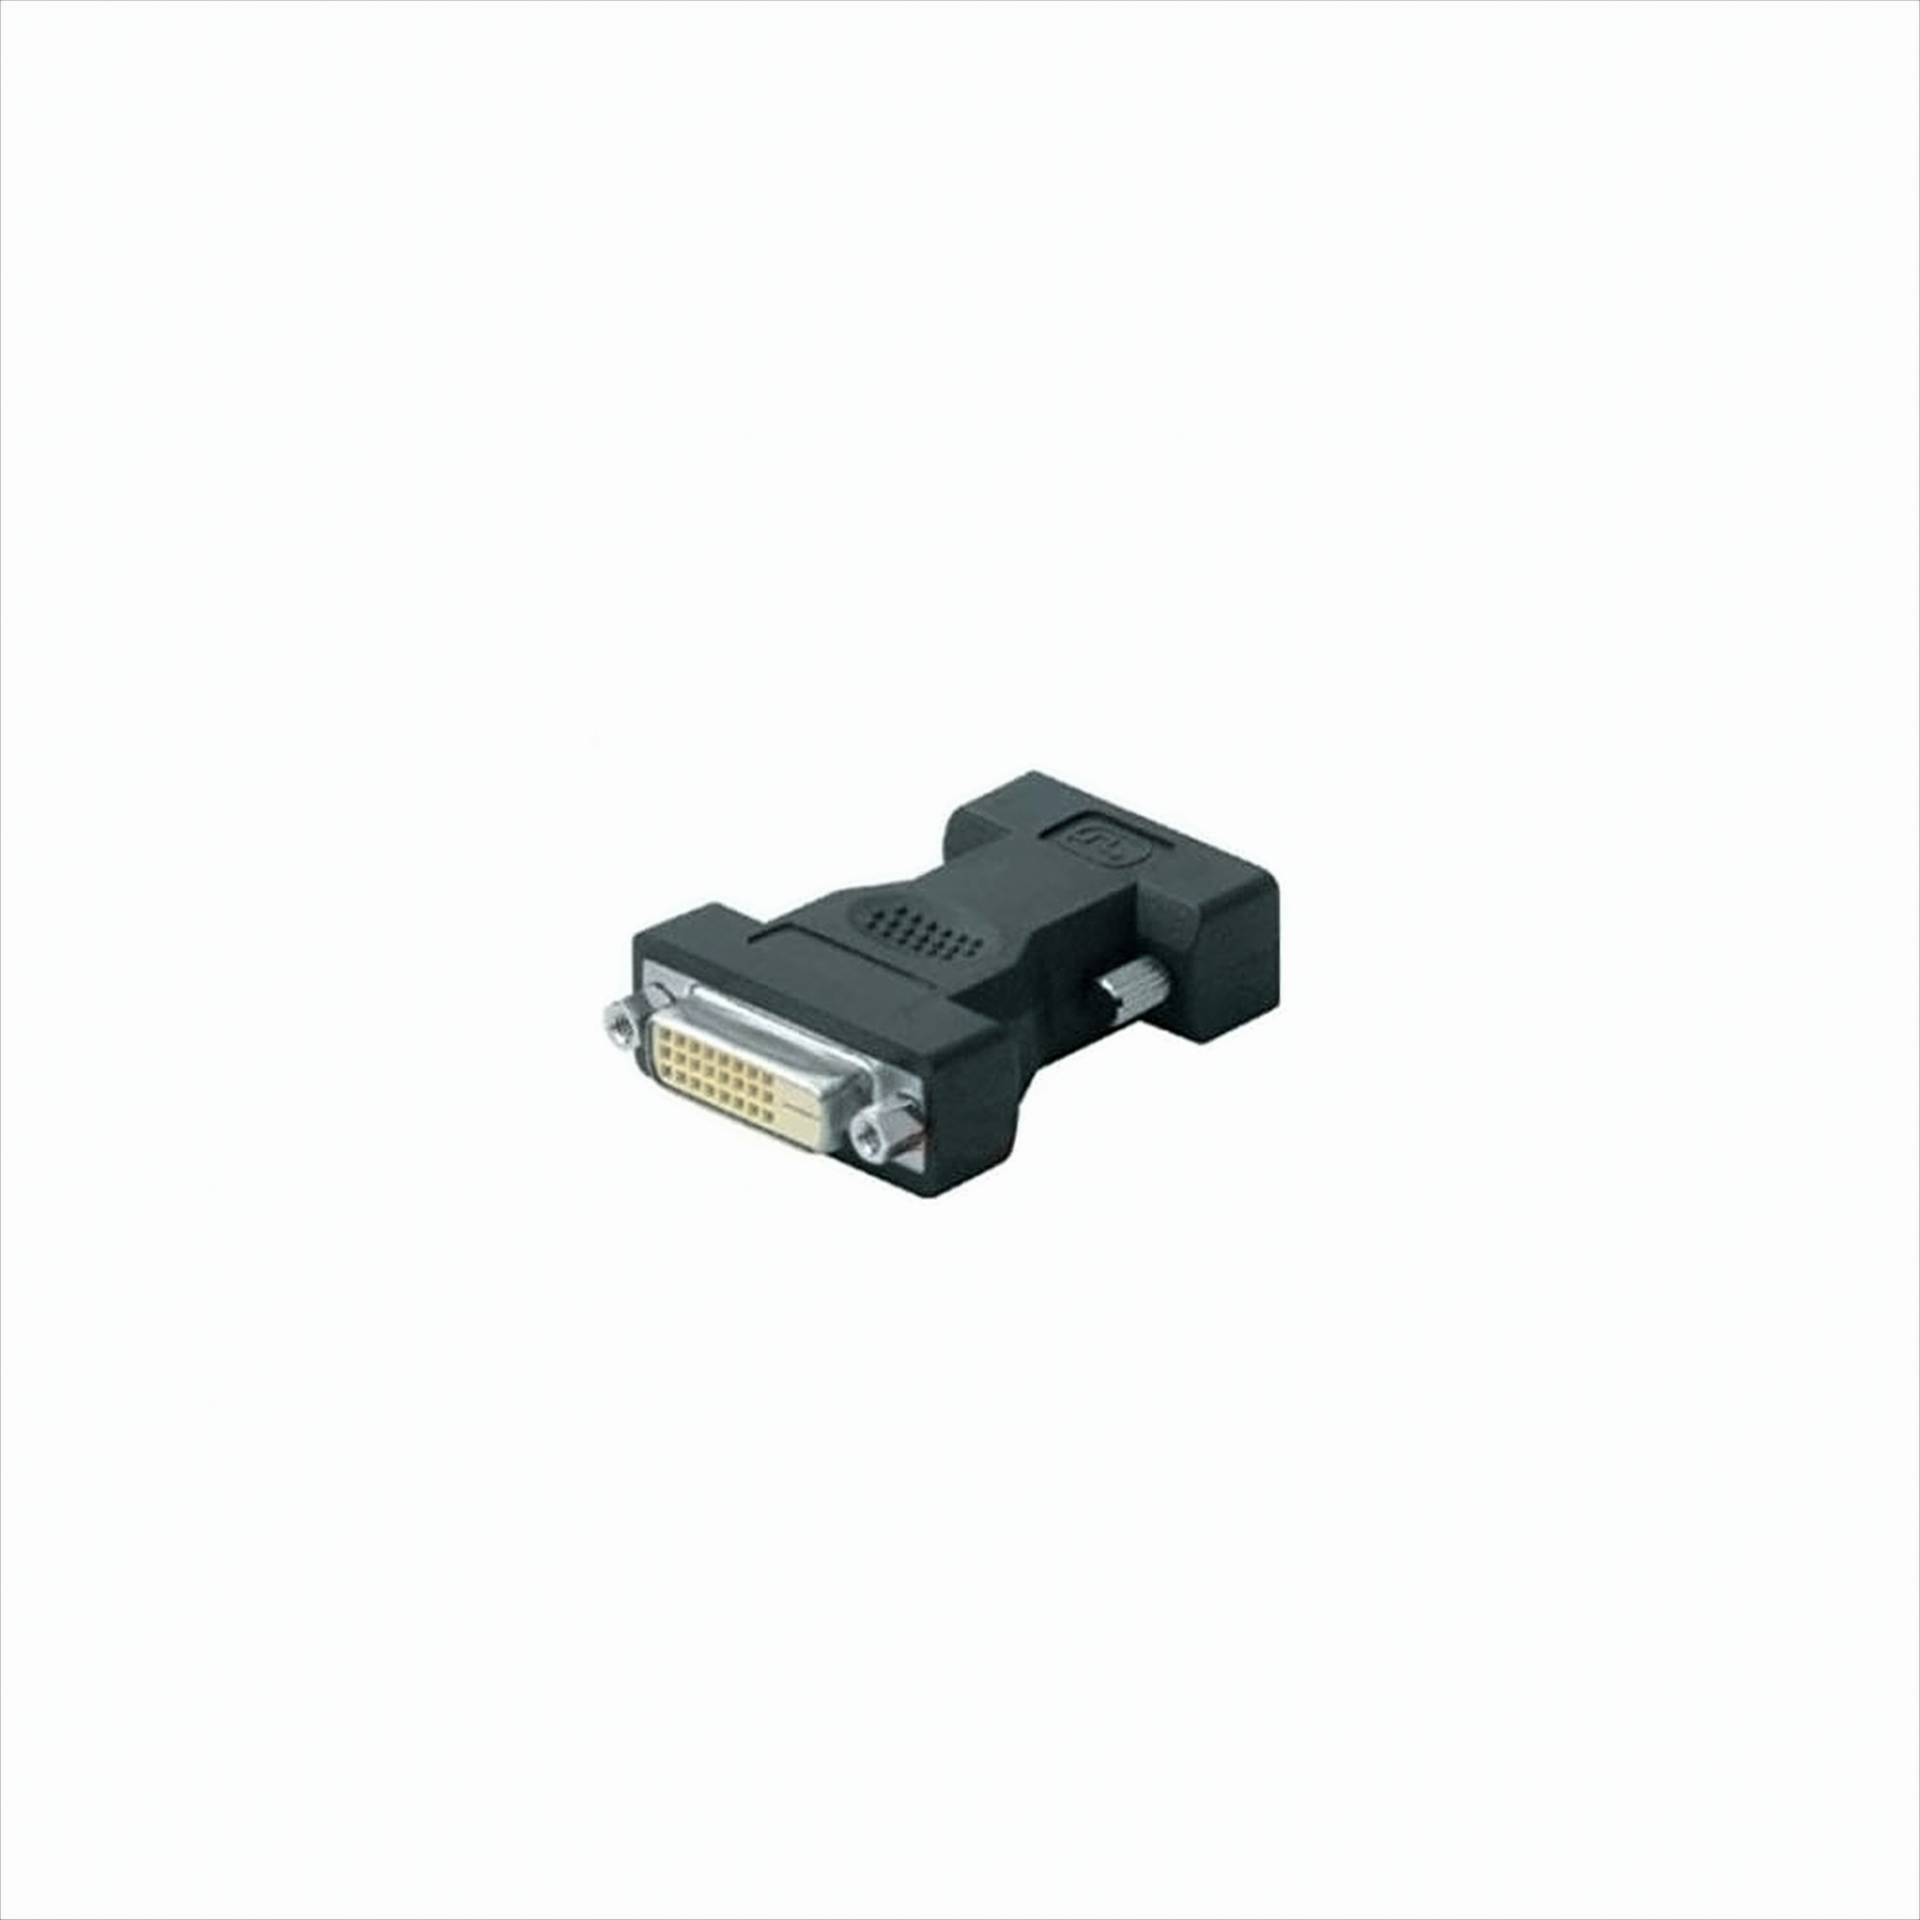 Ligawo 6517048 DVI-D Adapter 24+1 - Stecker auf Buchse - DVI Verlängerung, schwarz von Ligawo